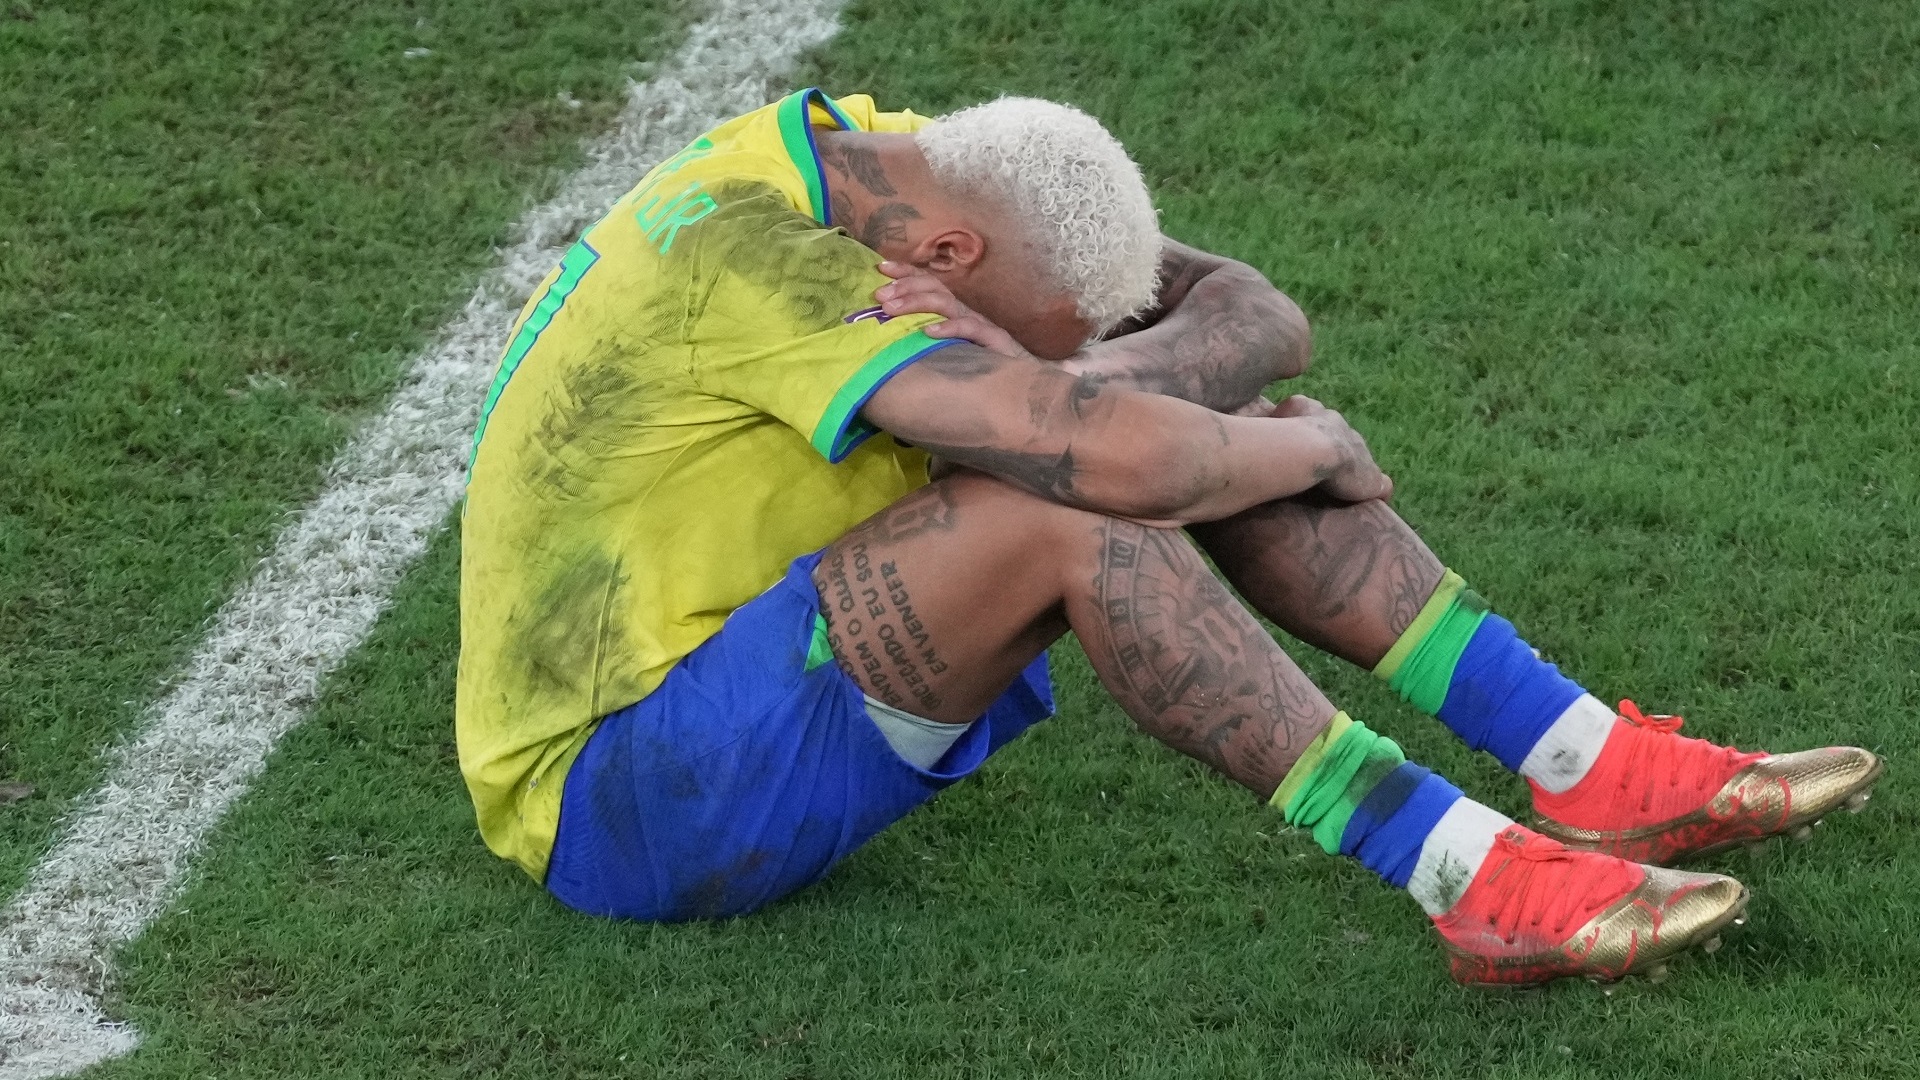 Stagione finita per Neymar, dovrà operarsi al ginocchio